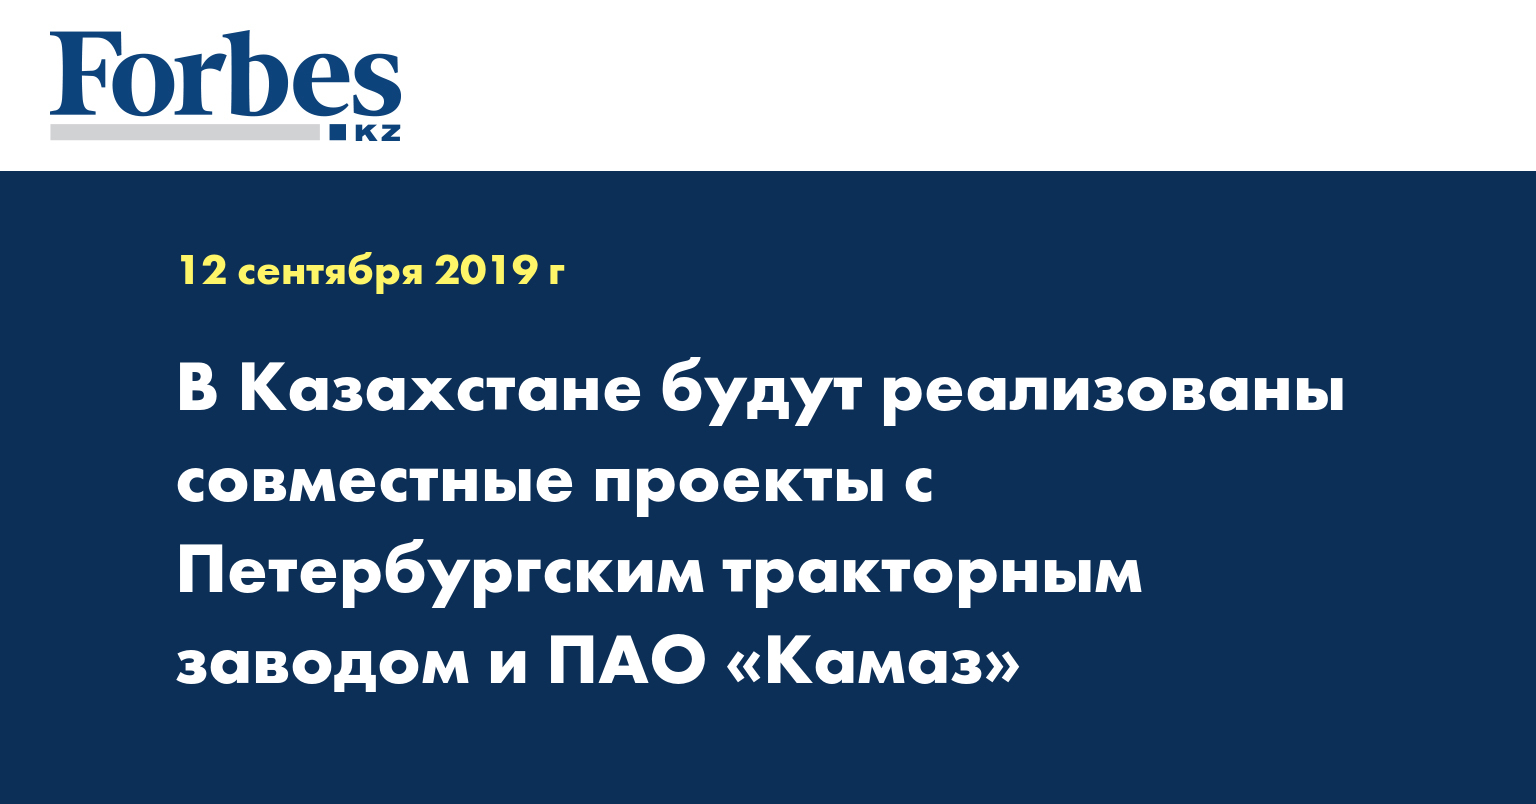 В Казахстане будут реализованы совместные проекты с Петербургским тракторным заводом и ПАО «Камаз»